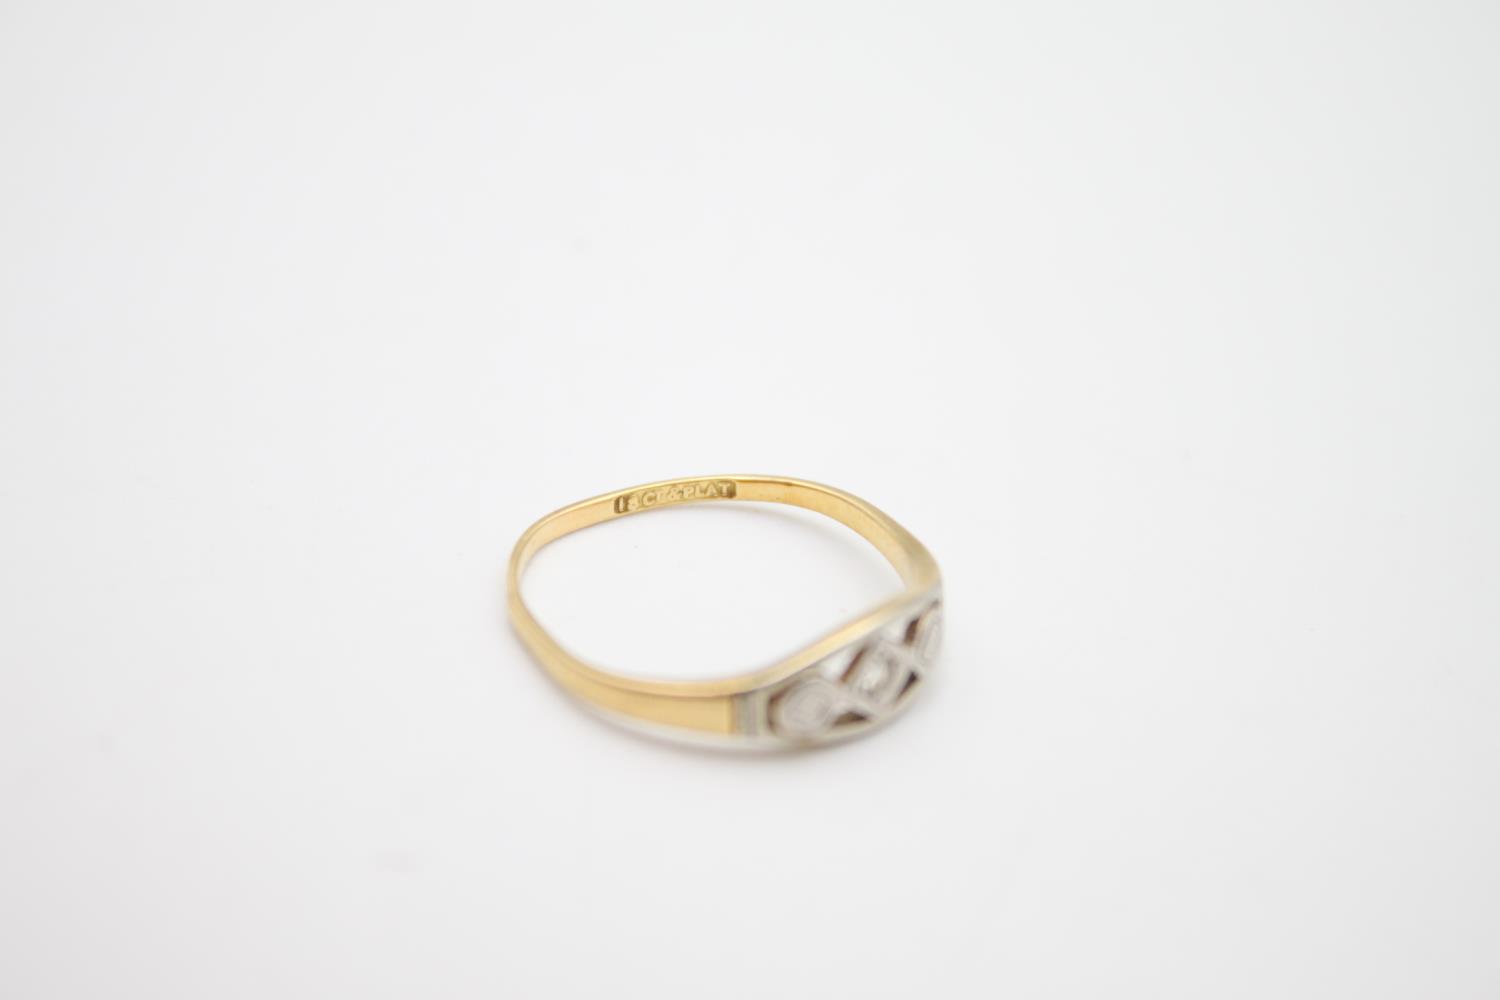 18ct gold diamond set ring 1.7g Size N - Image 4 of 4